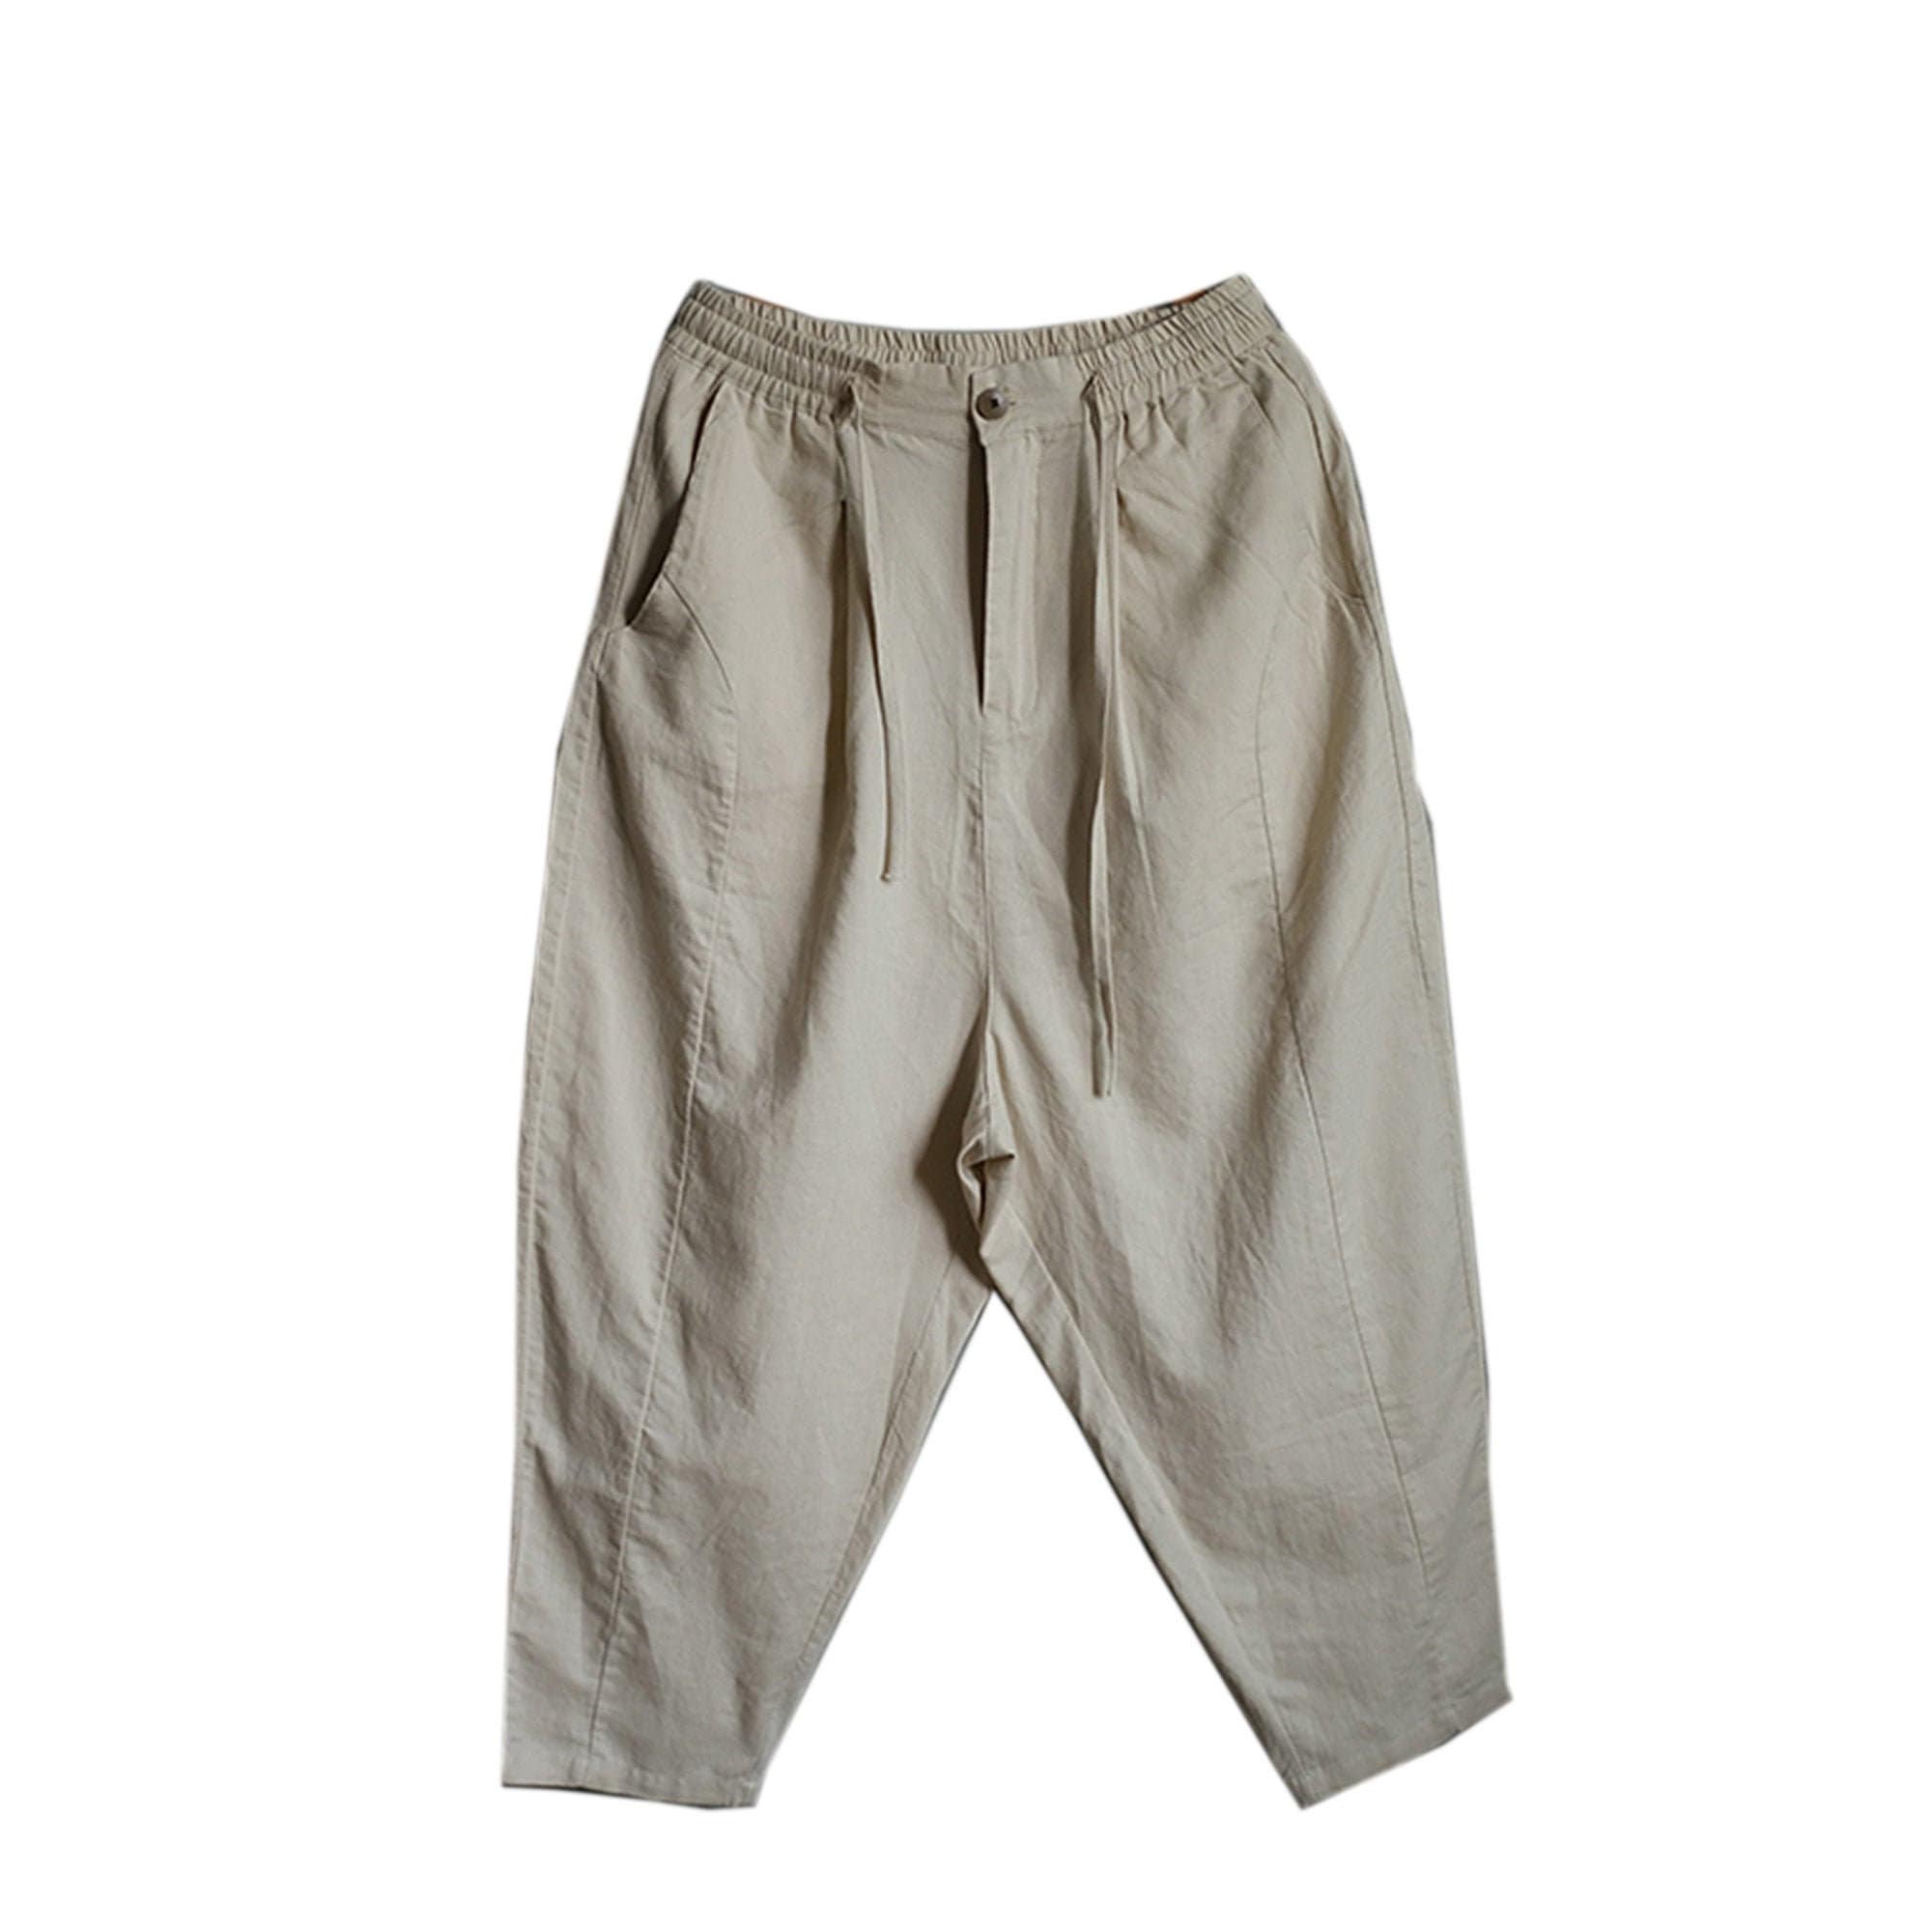 Linen Pants for Men Wide Leg Linen Pants Comfy Trousers for - Etsy ...